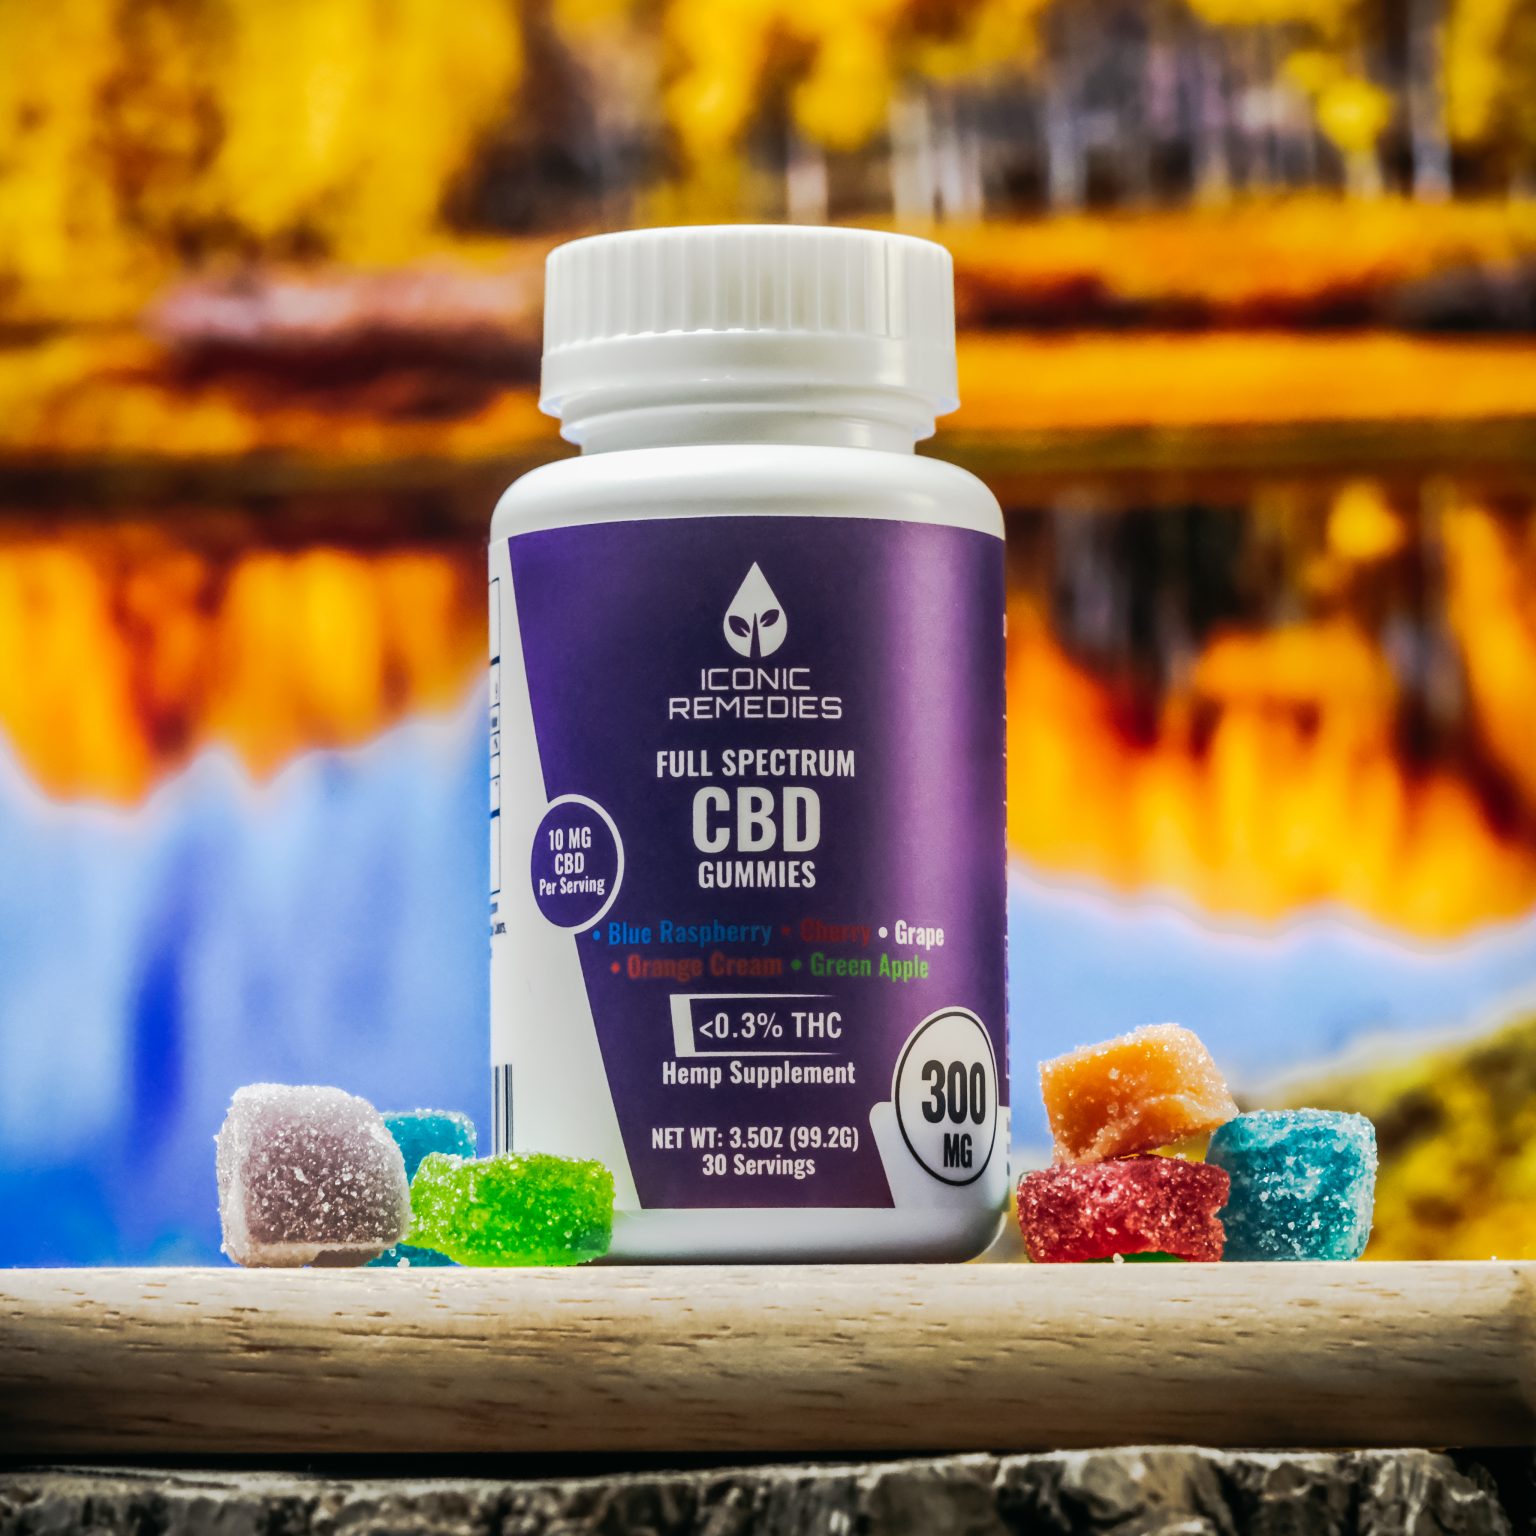 Full Spectrum CBD Gummies - Iconic Remedies